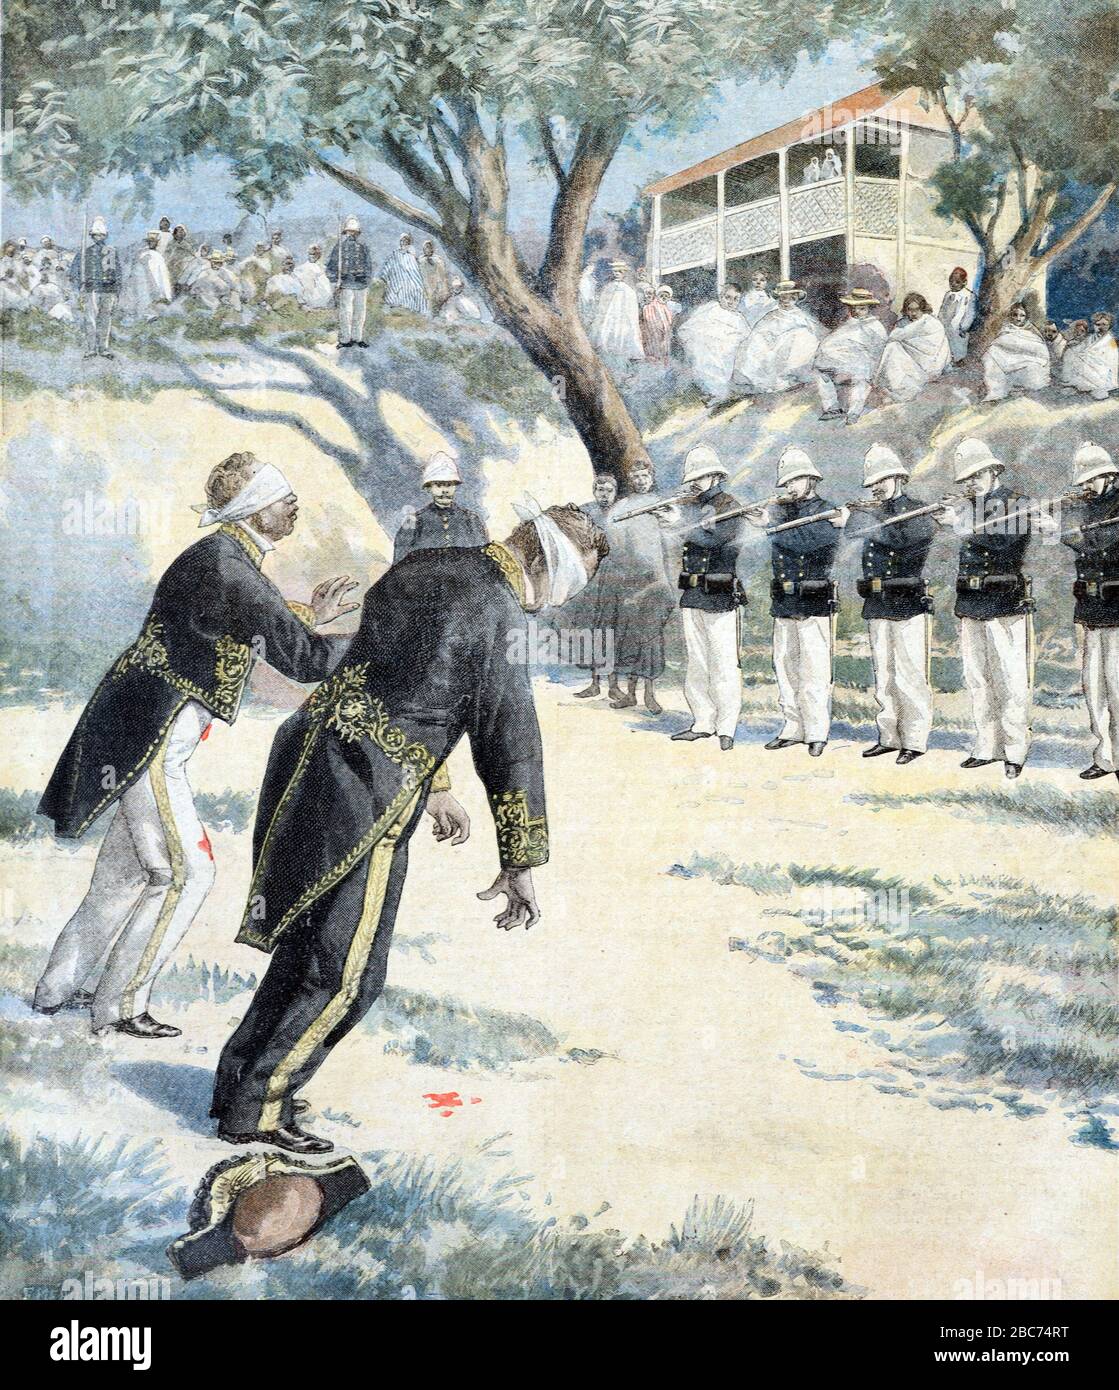 Exécution des combattants de résistance par les troupes françaises lors de l'invasion française ou de la guerre franco-hova à Antananarivo ou Tananarive novembre 1896. Illusation de l'gravure à partir de novembre 1896. Banque D'Images